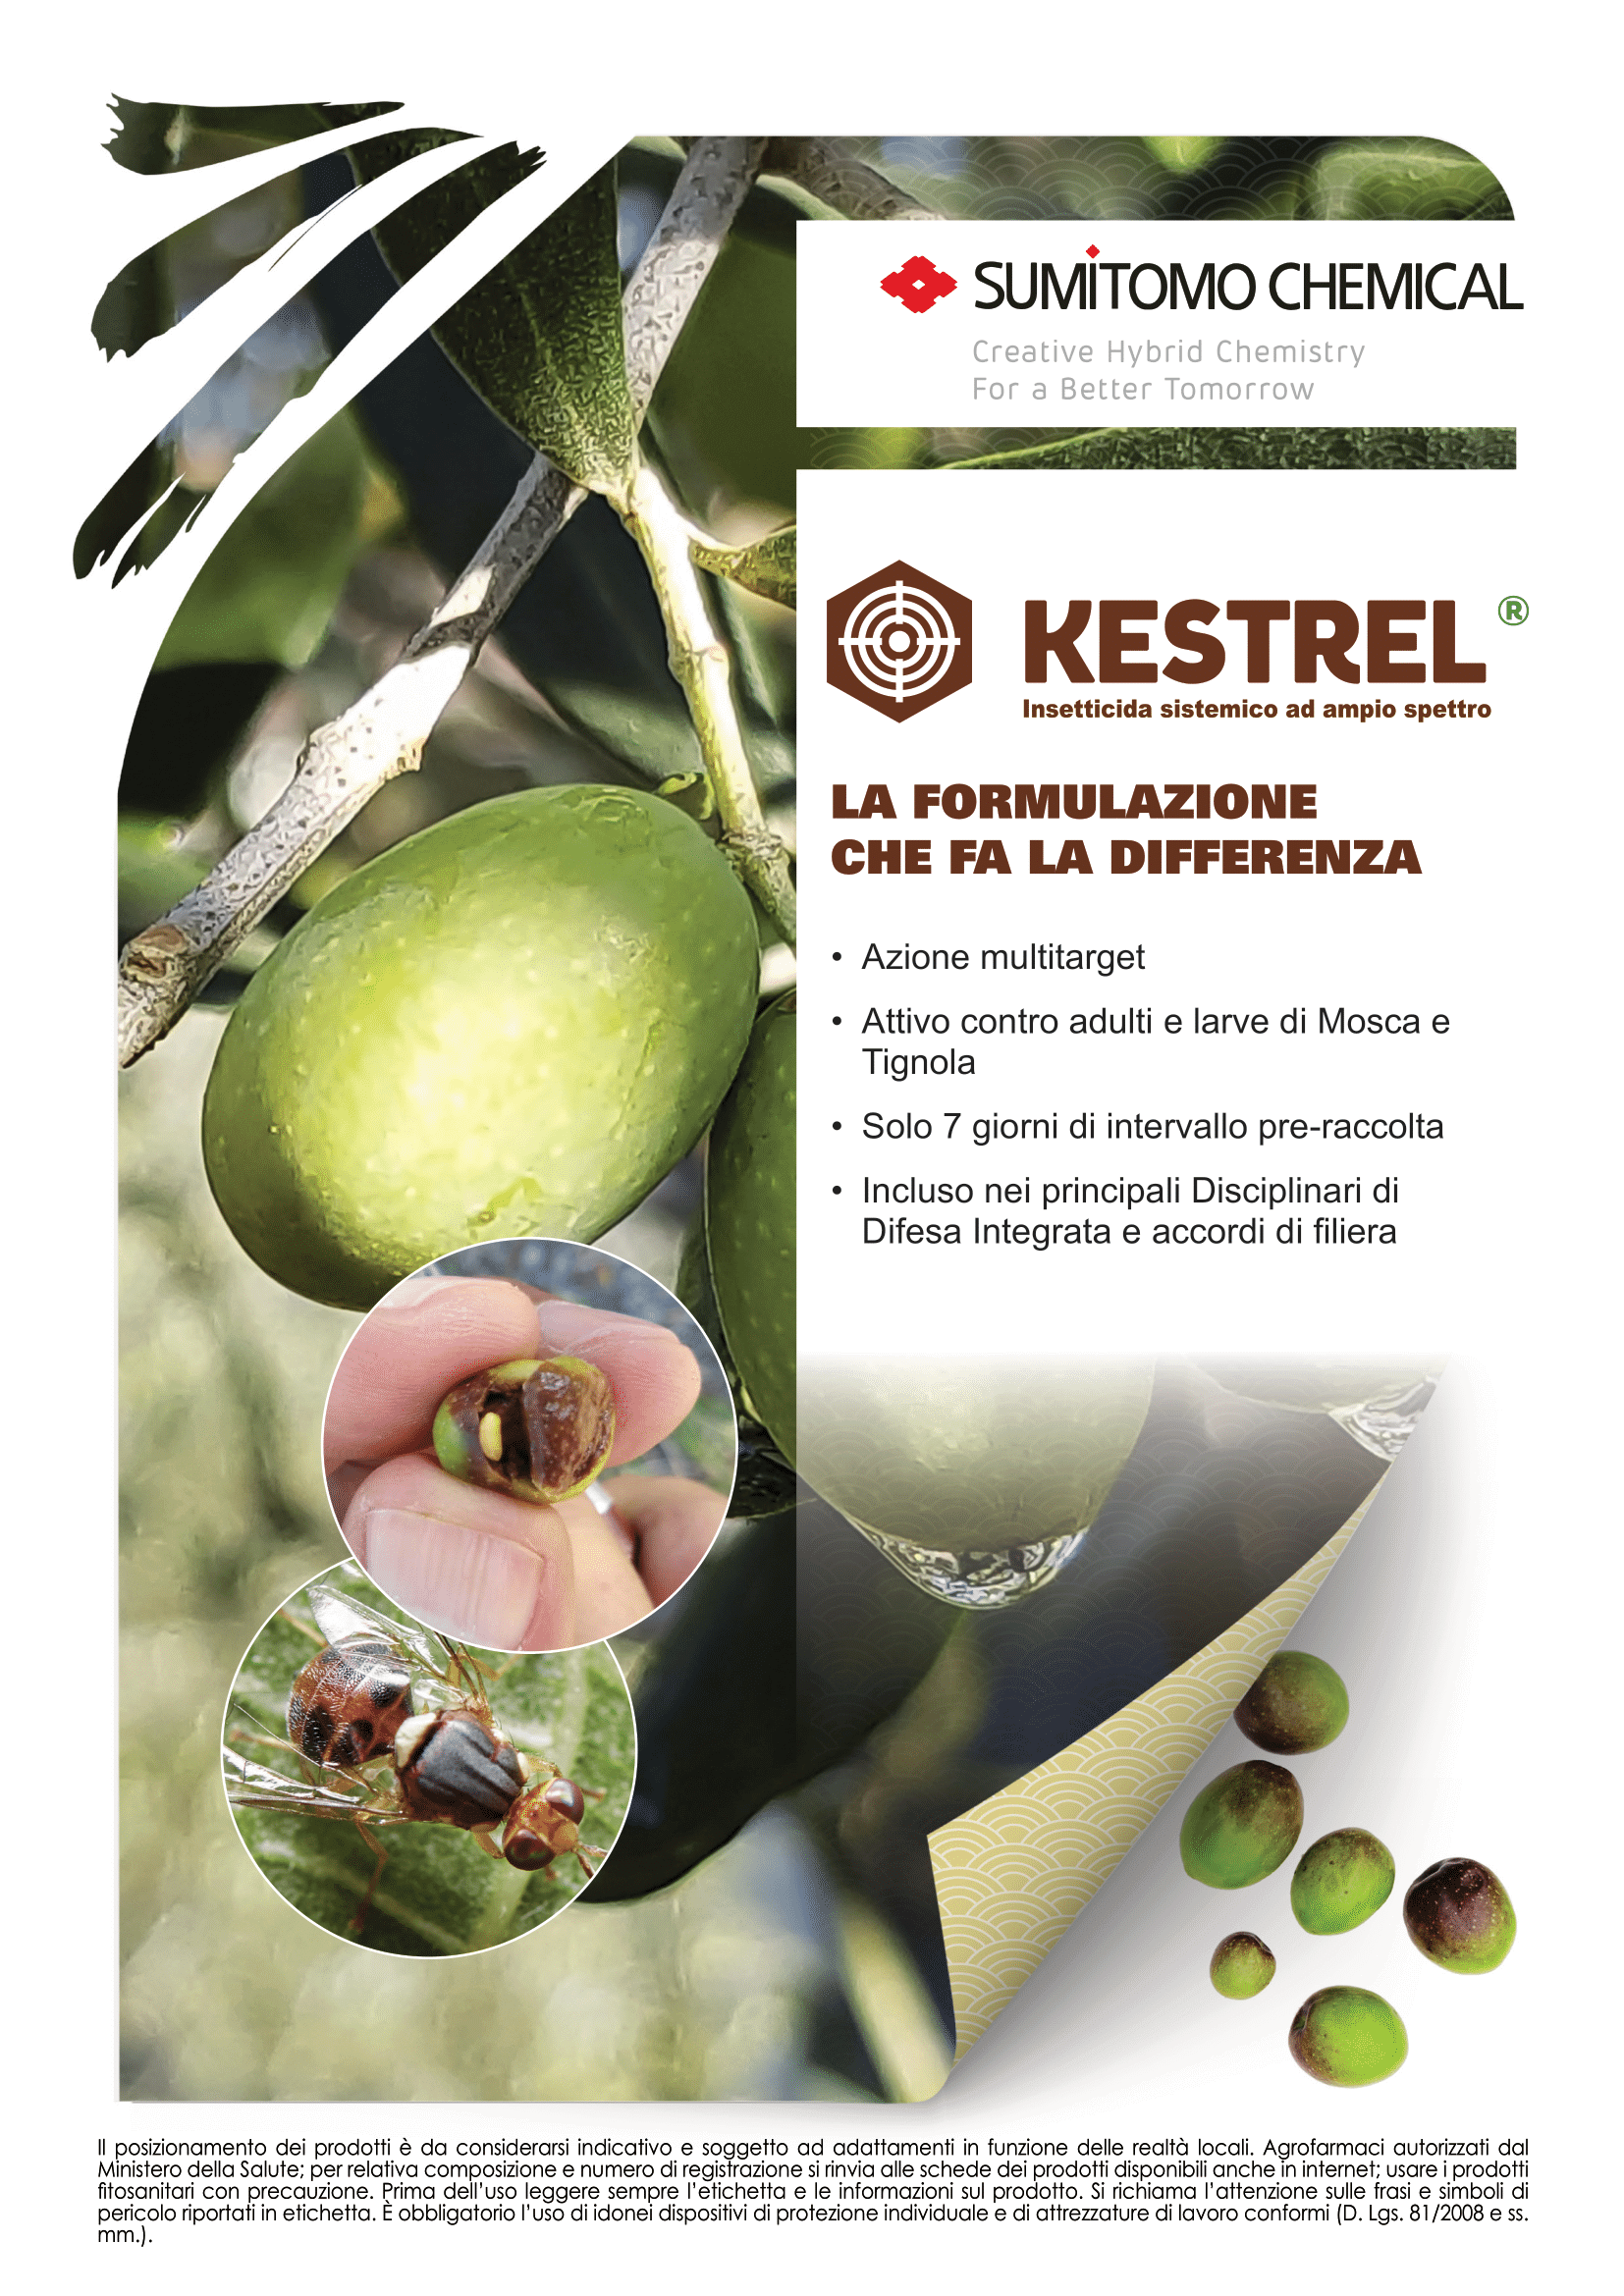 KESTREL, l'insetticida sistemico ad ampio spettro di SUMITOMO CHEMICAL